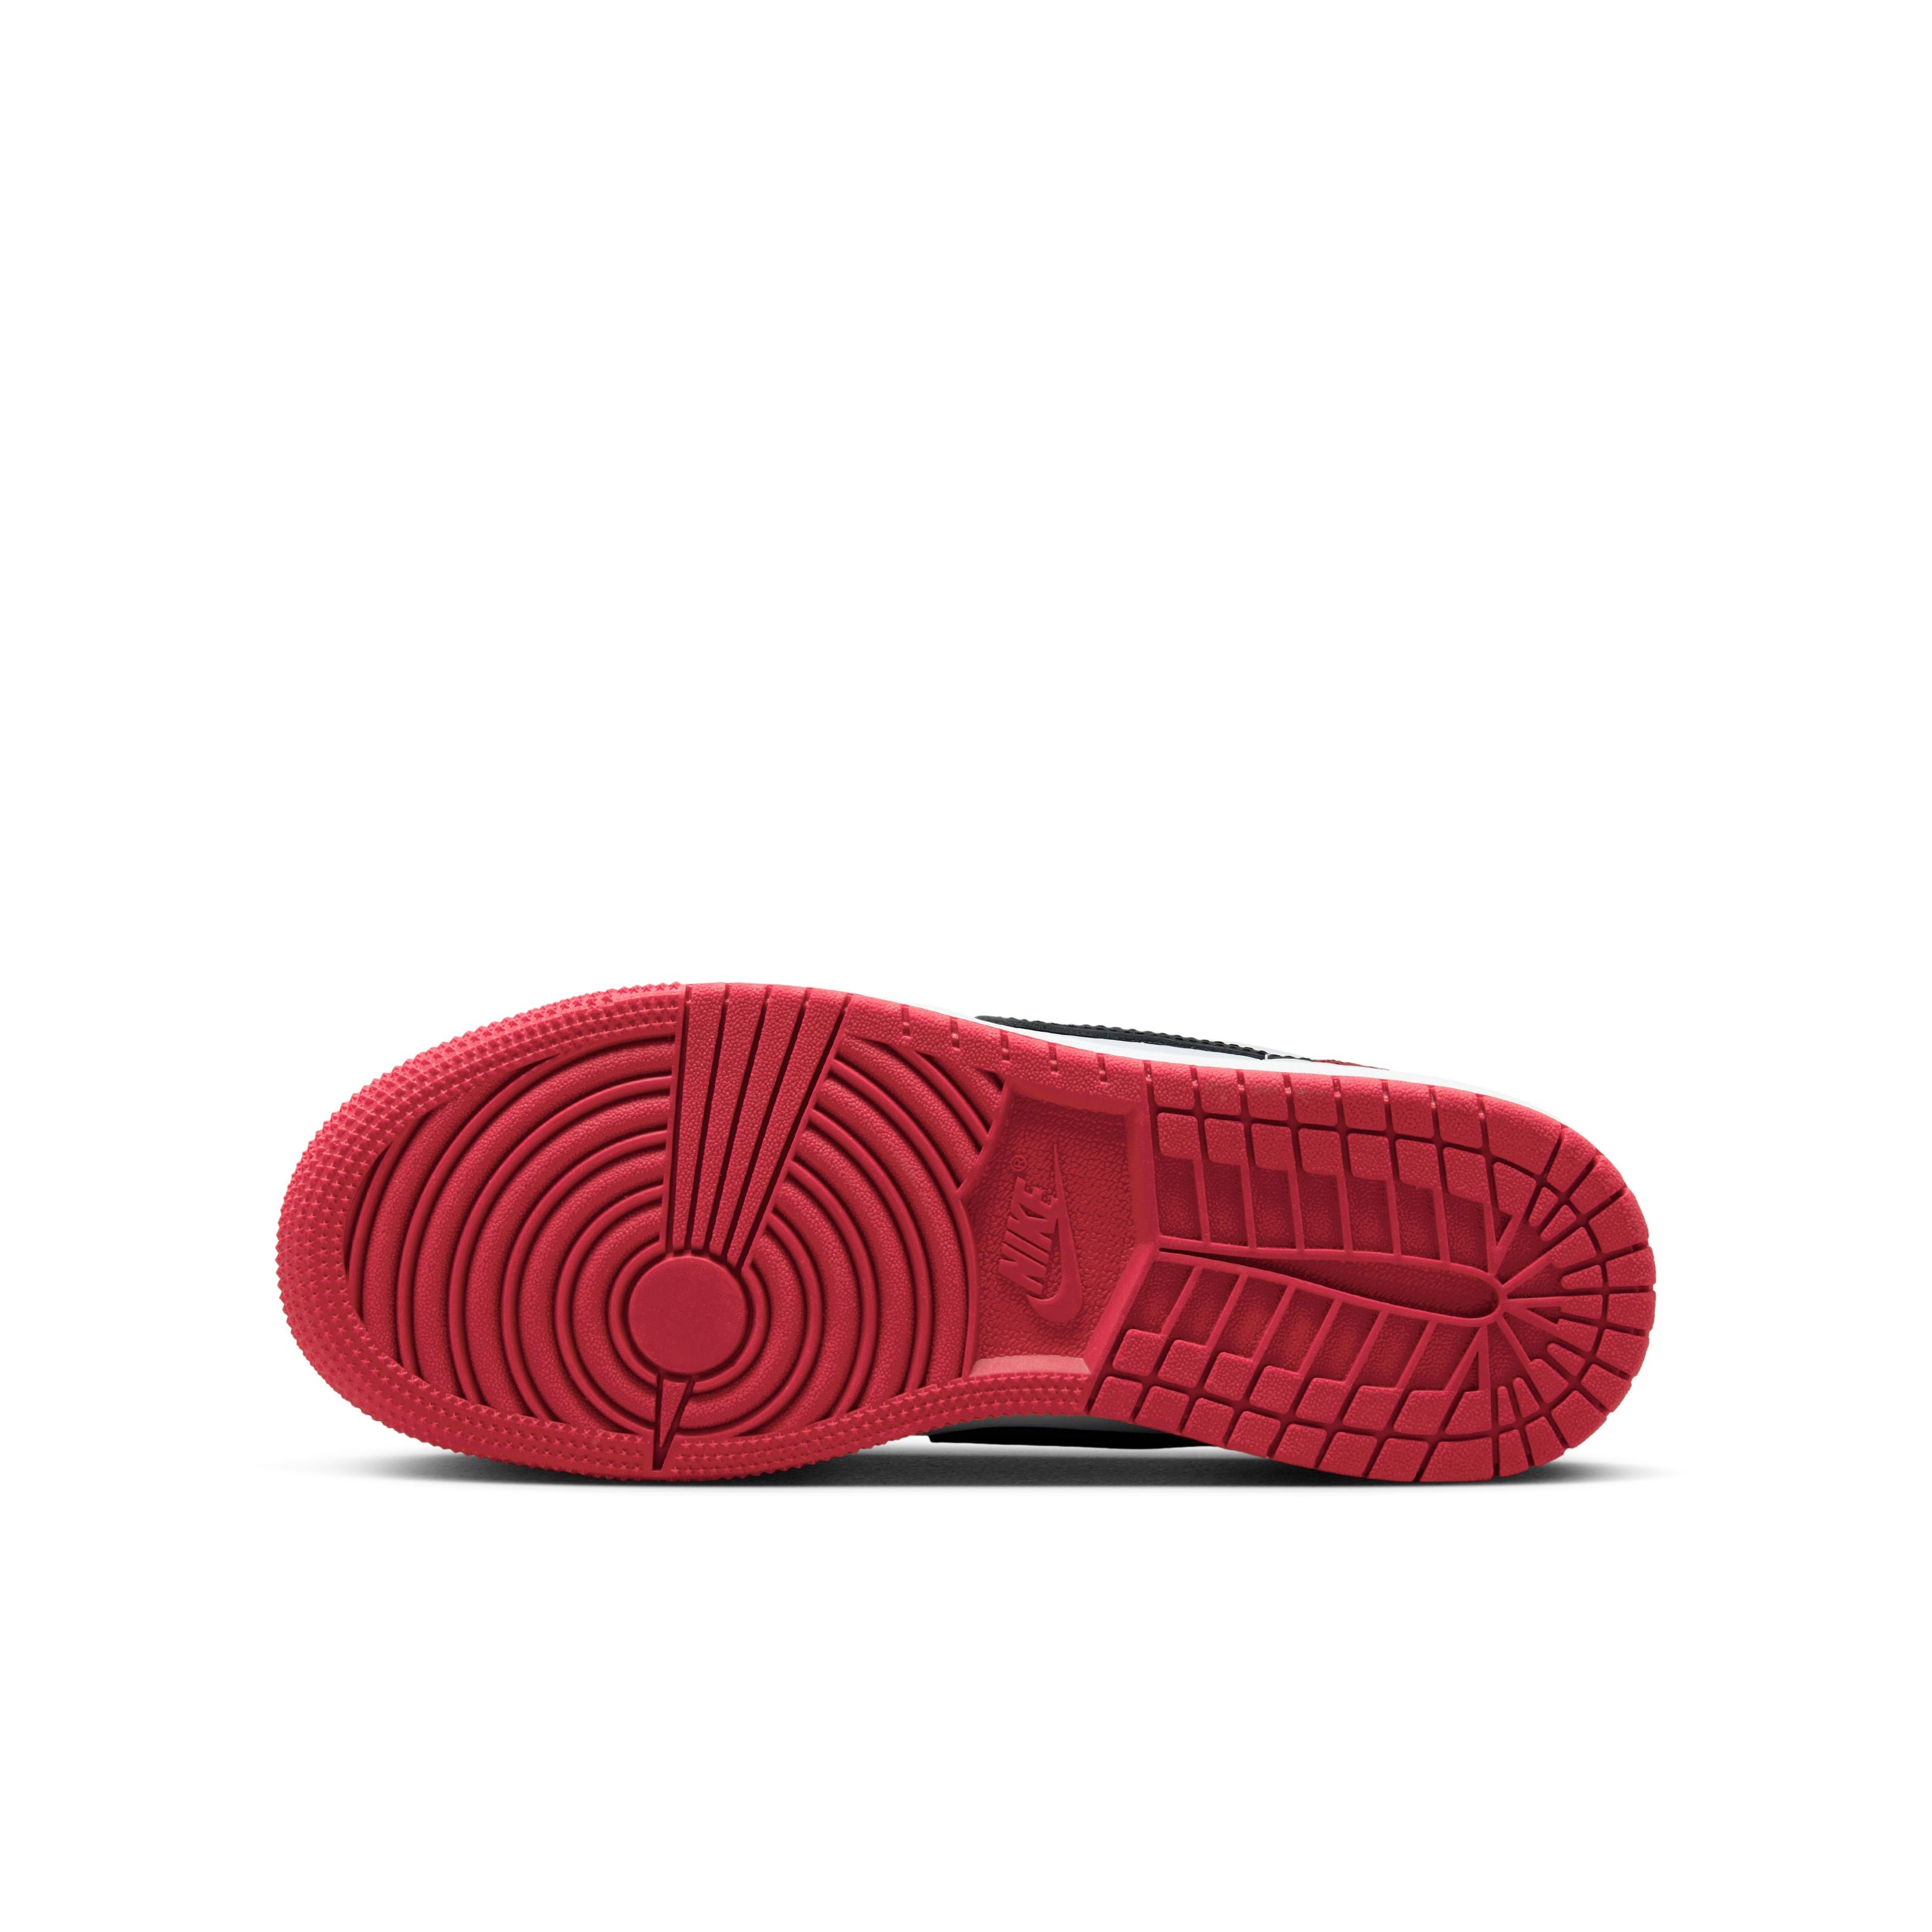 Jordan 1 Low OG (GS) - Black Toe - White/Black/Varsity Red